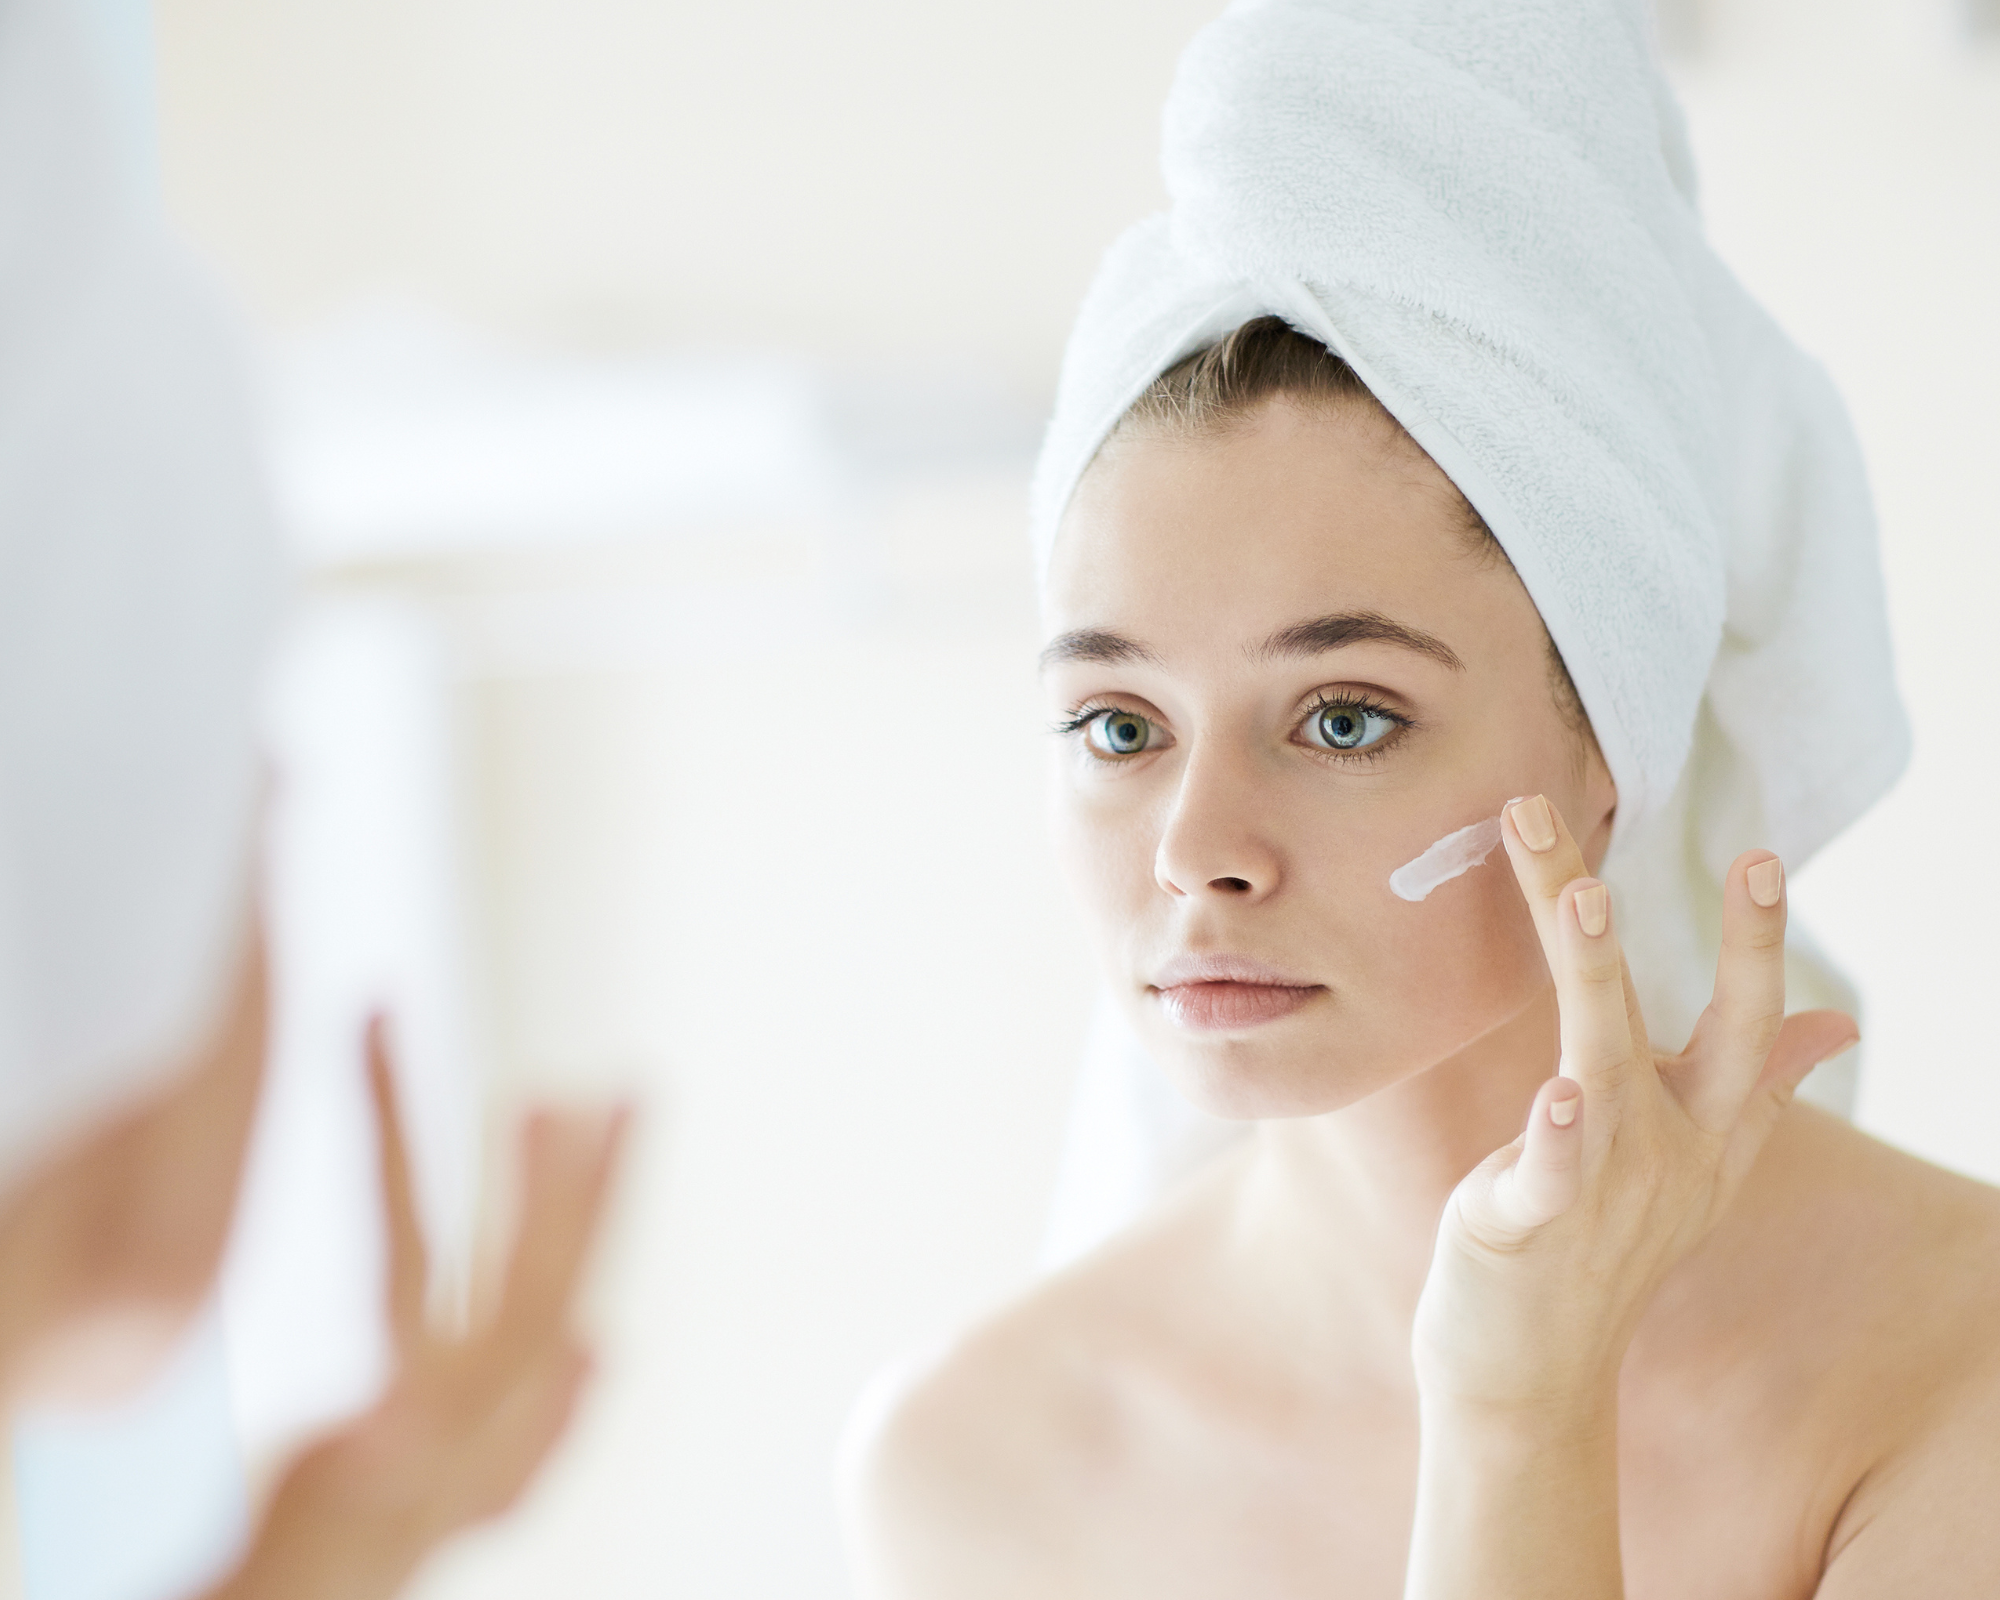 Dưỡng ẩm: Sau khi làm sạch da và tẩy tế bào chết, chị em đừng quên thoa kem dưỡng ẩm để bổ sung độ cho da. Điều này sẽ giúp phục hồi độ ẩm và ngăn ngừa làn da bị mất nước, chảy xệ.